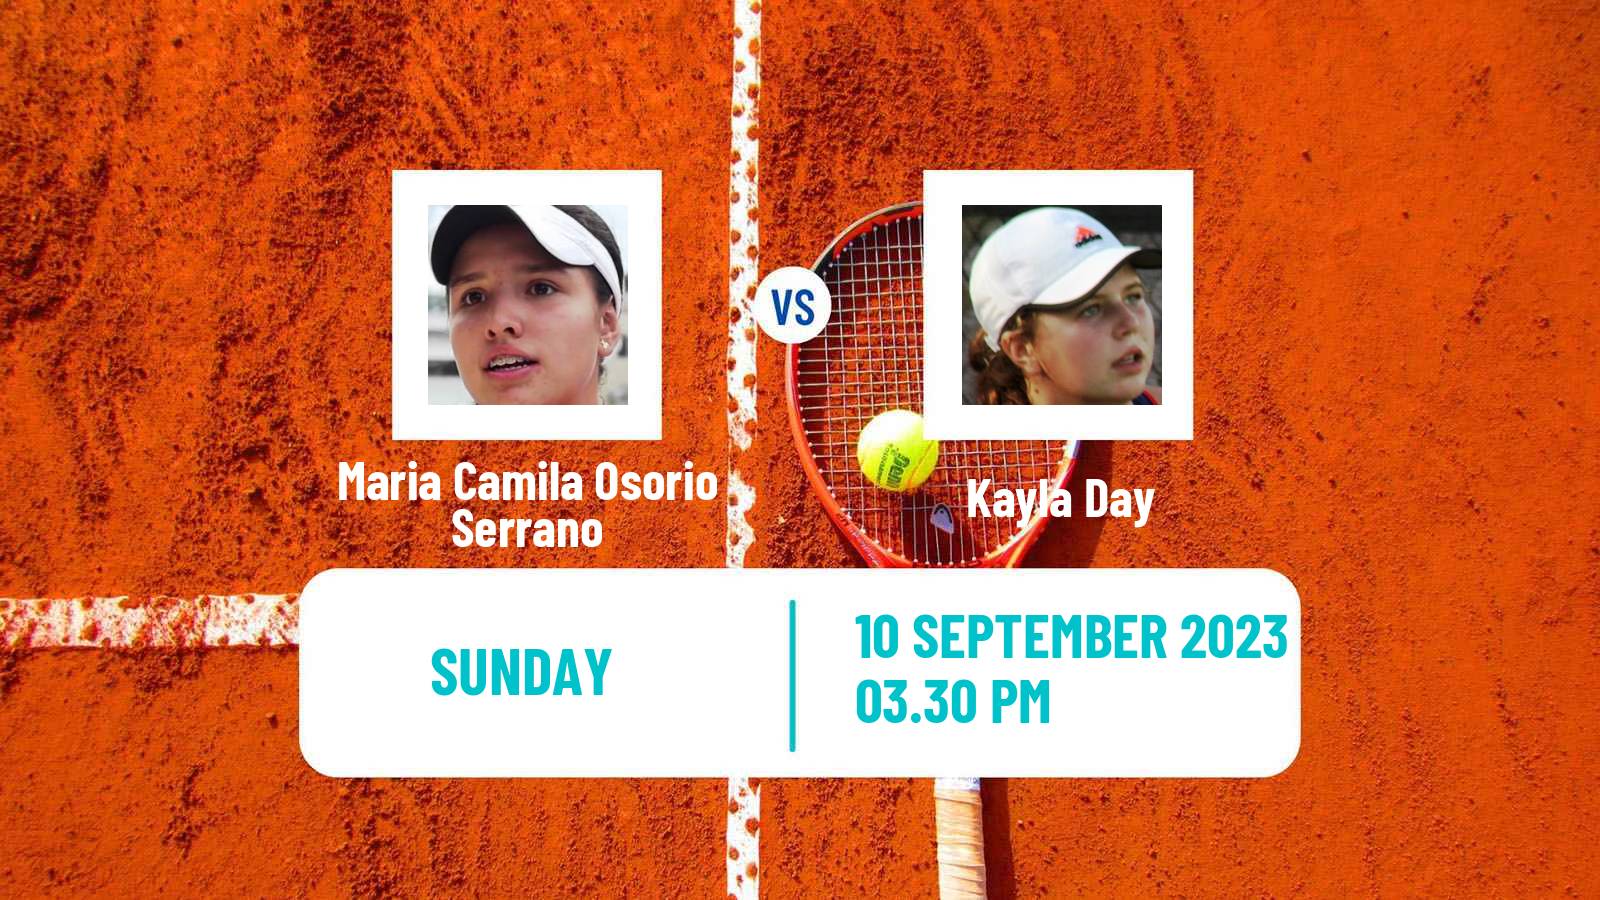 Tennis WTA San Diego Maria Camila Osorio Serrano - Kayla Day